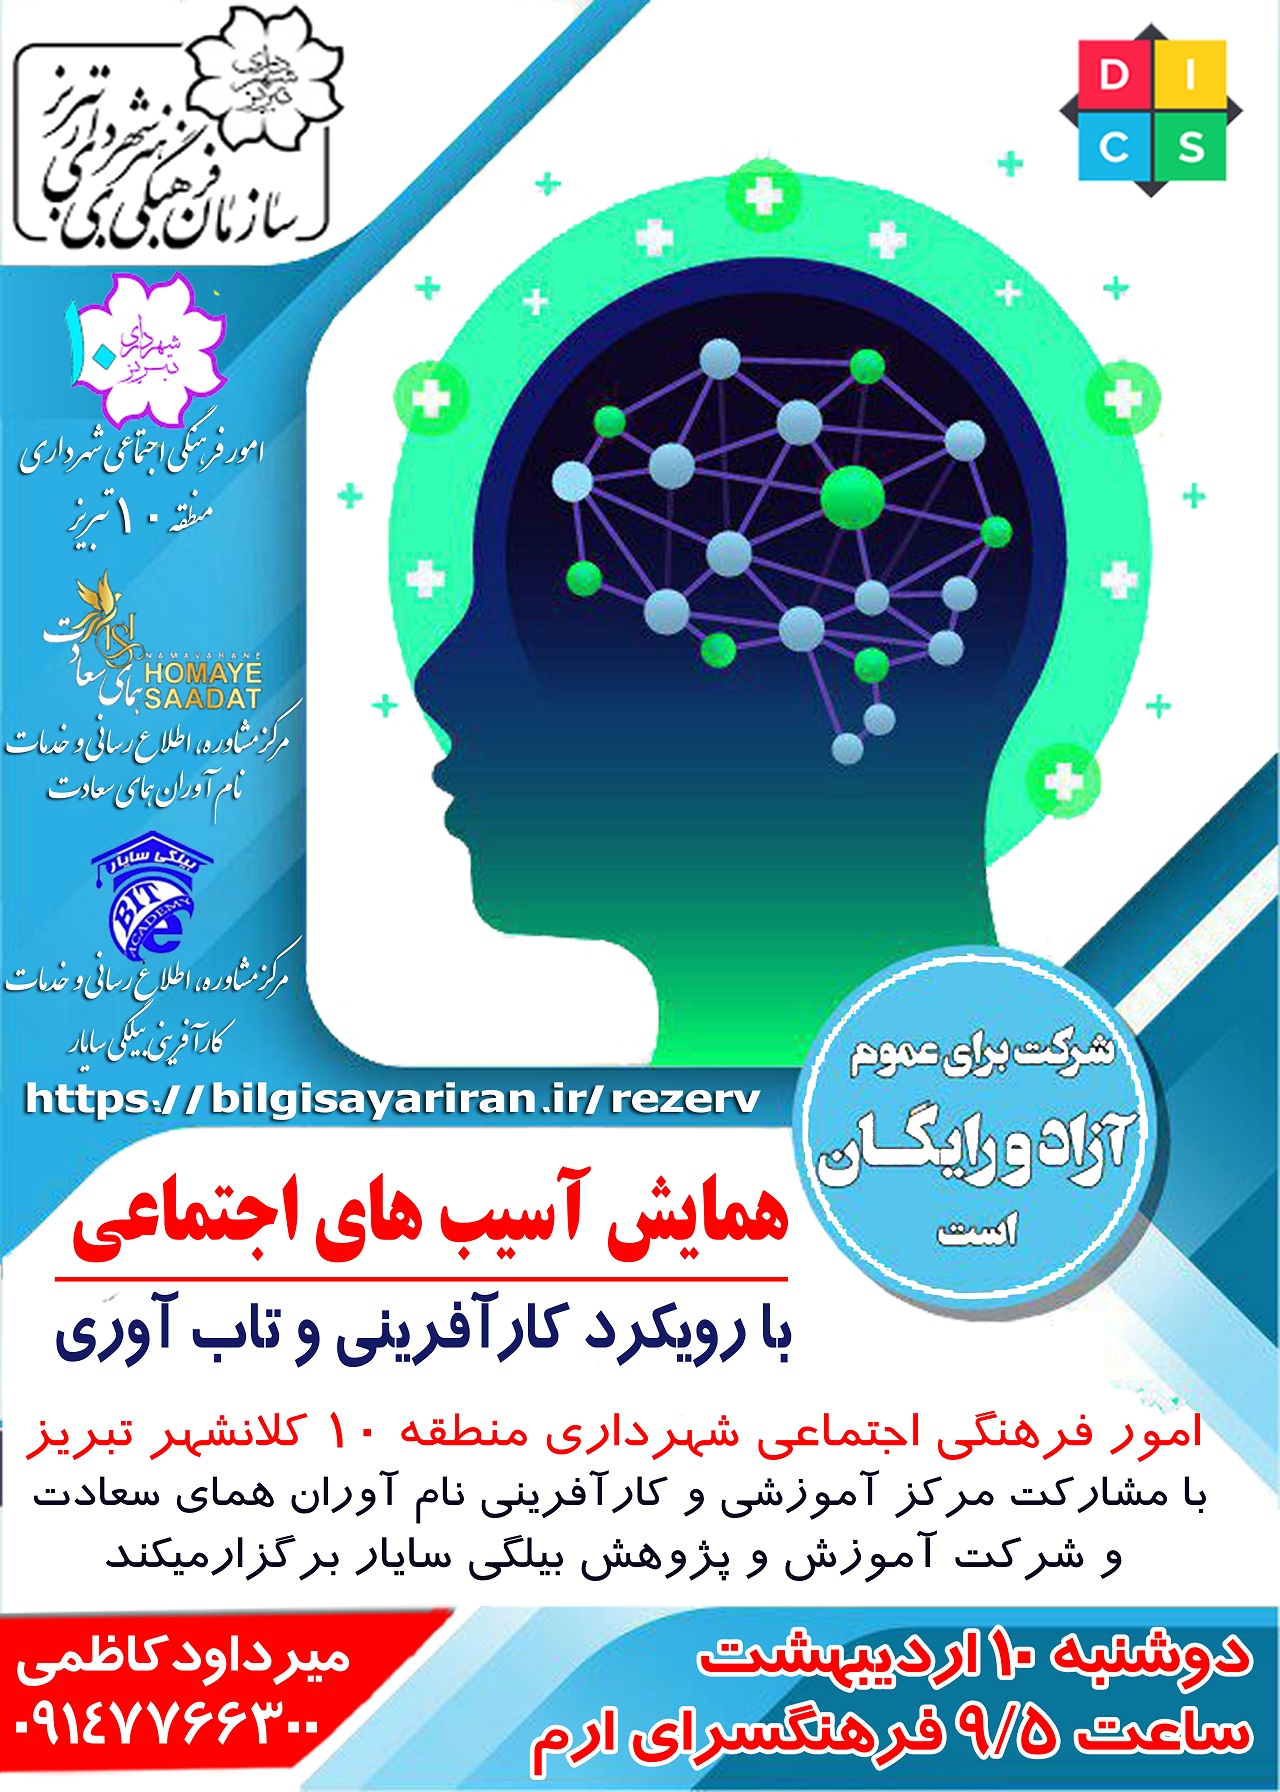 همایش آسیب های اجتماعی  با رویکرد کارآفرینی و تاب آوری- شهرداری 10 تبریز-14030210